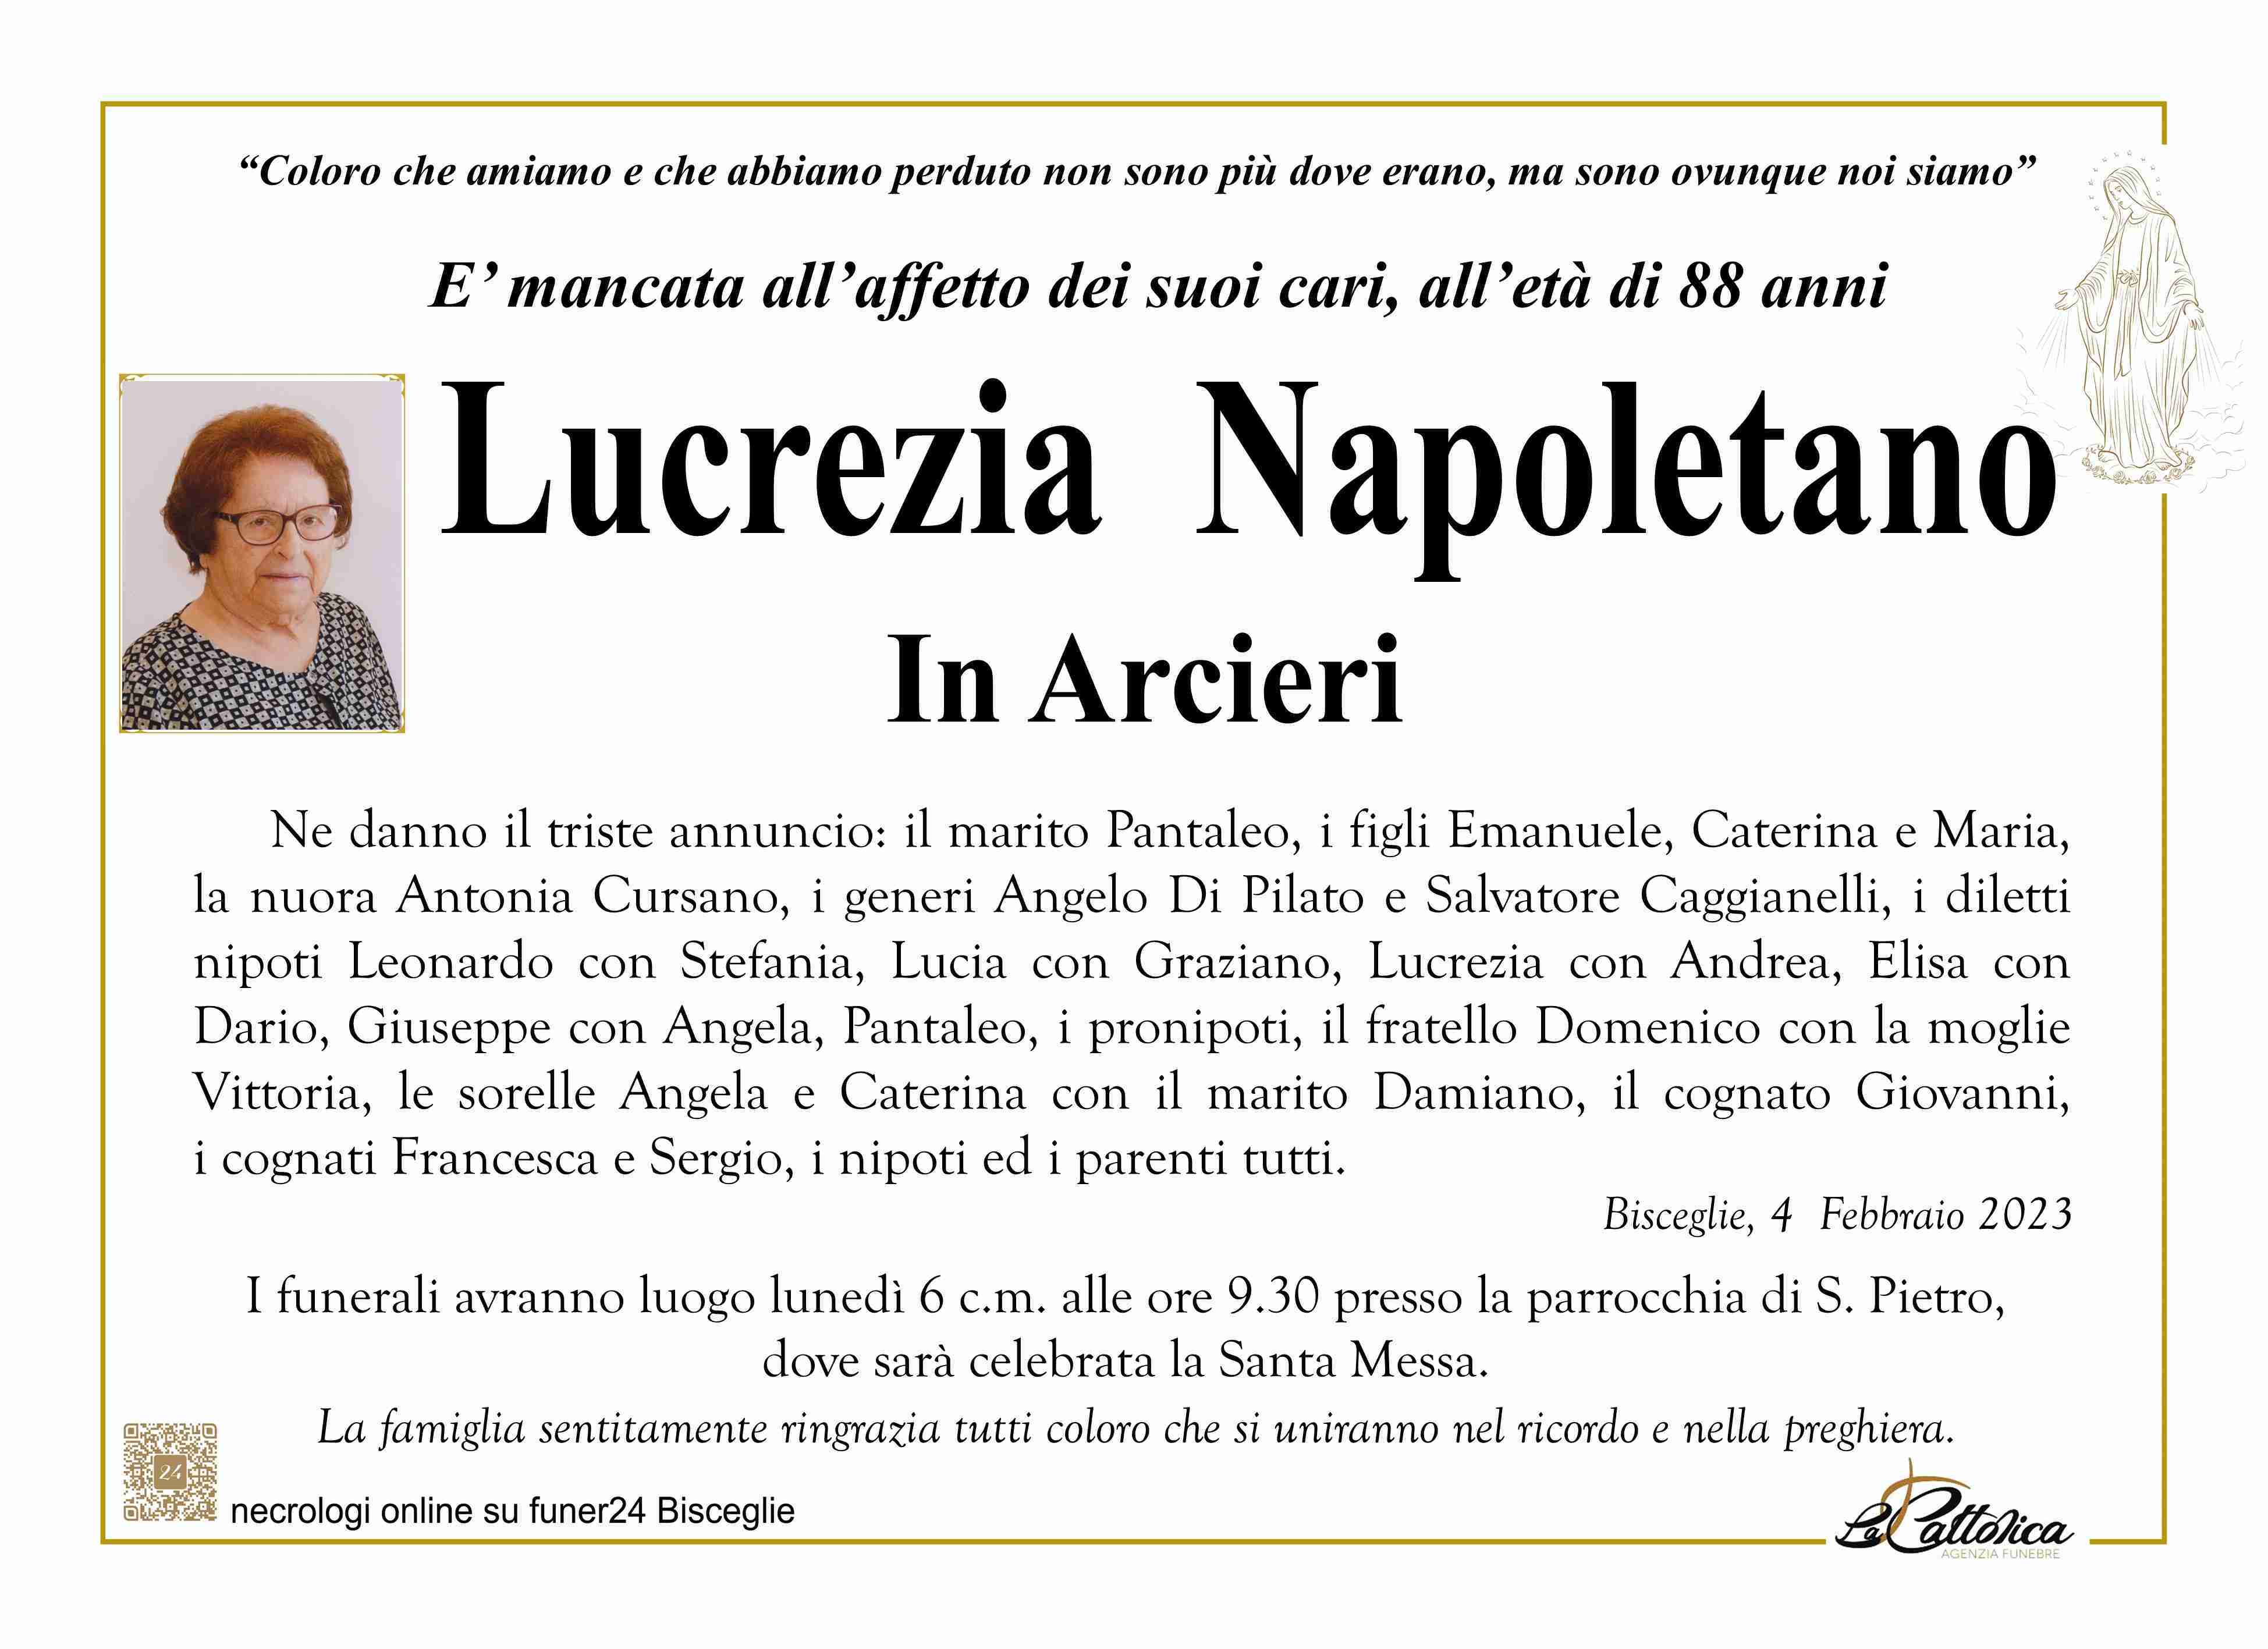 Lucrezia Napoletano